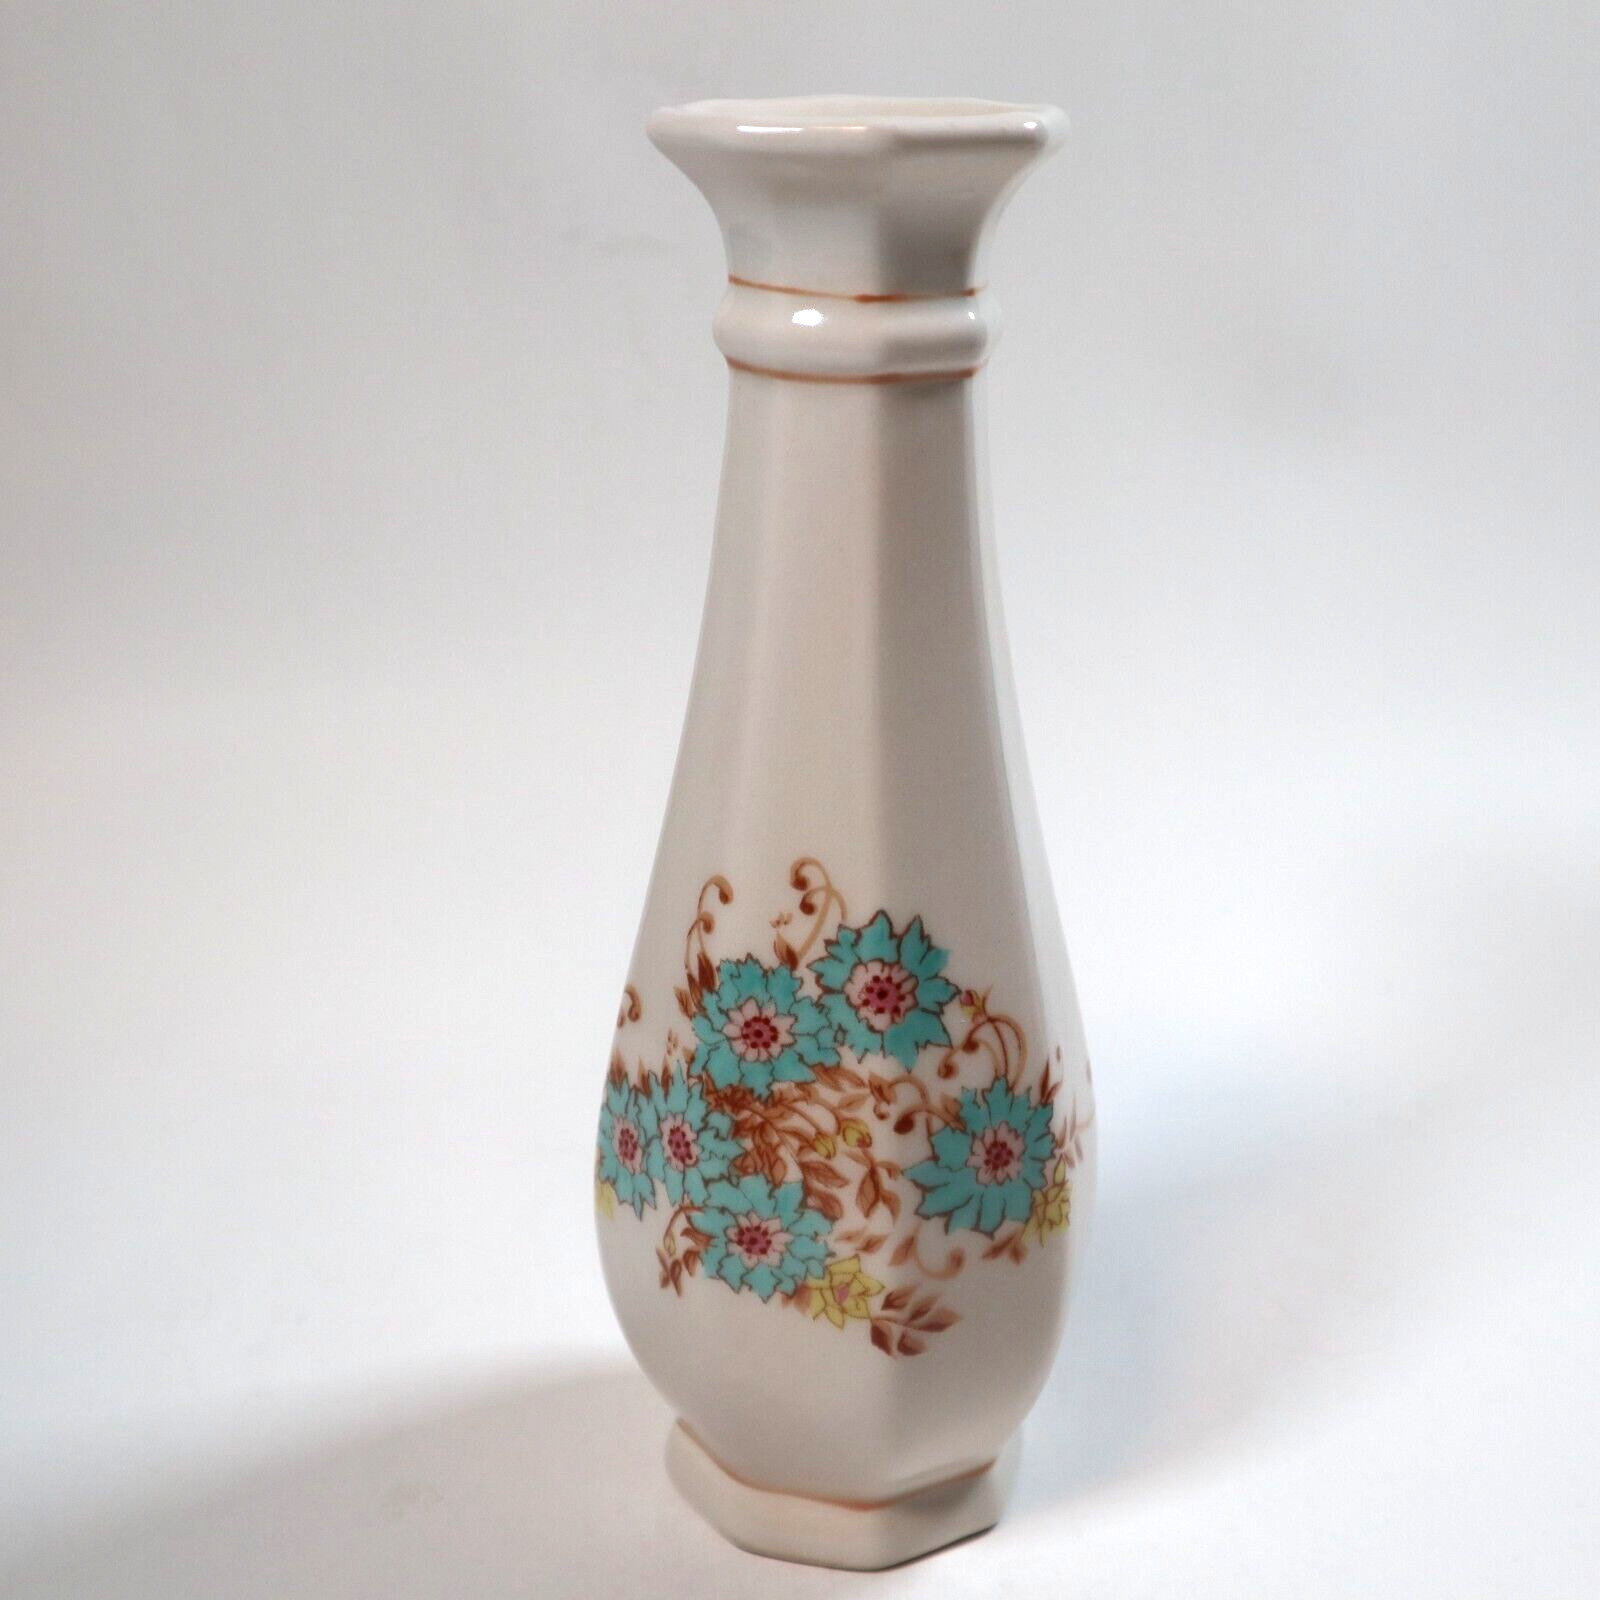 Vintage 1983 FTD F.T.D.A. White Ceramic Blue Flower Vase Floral Pattern Portugal